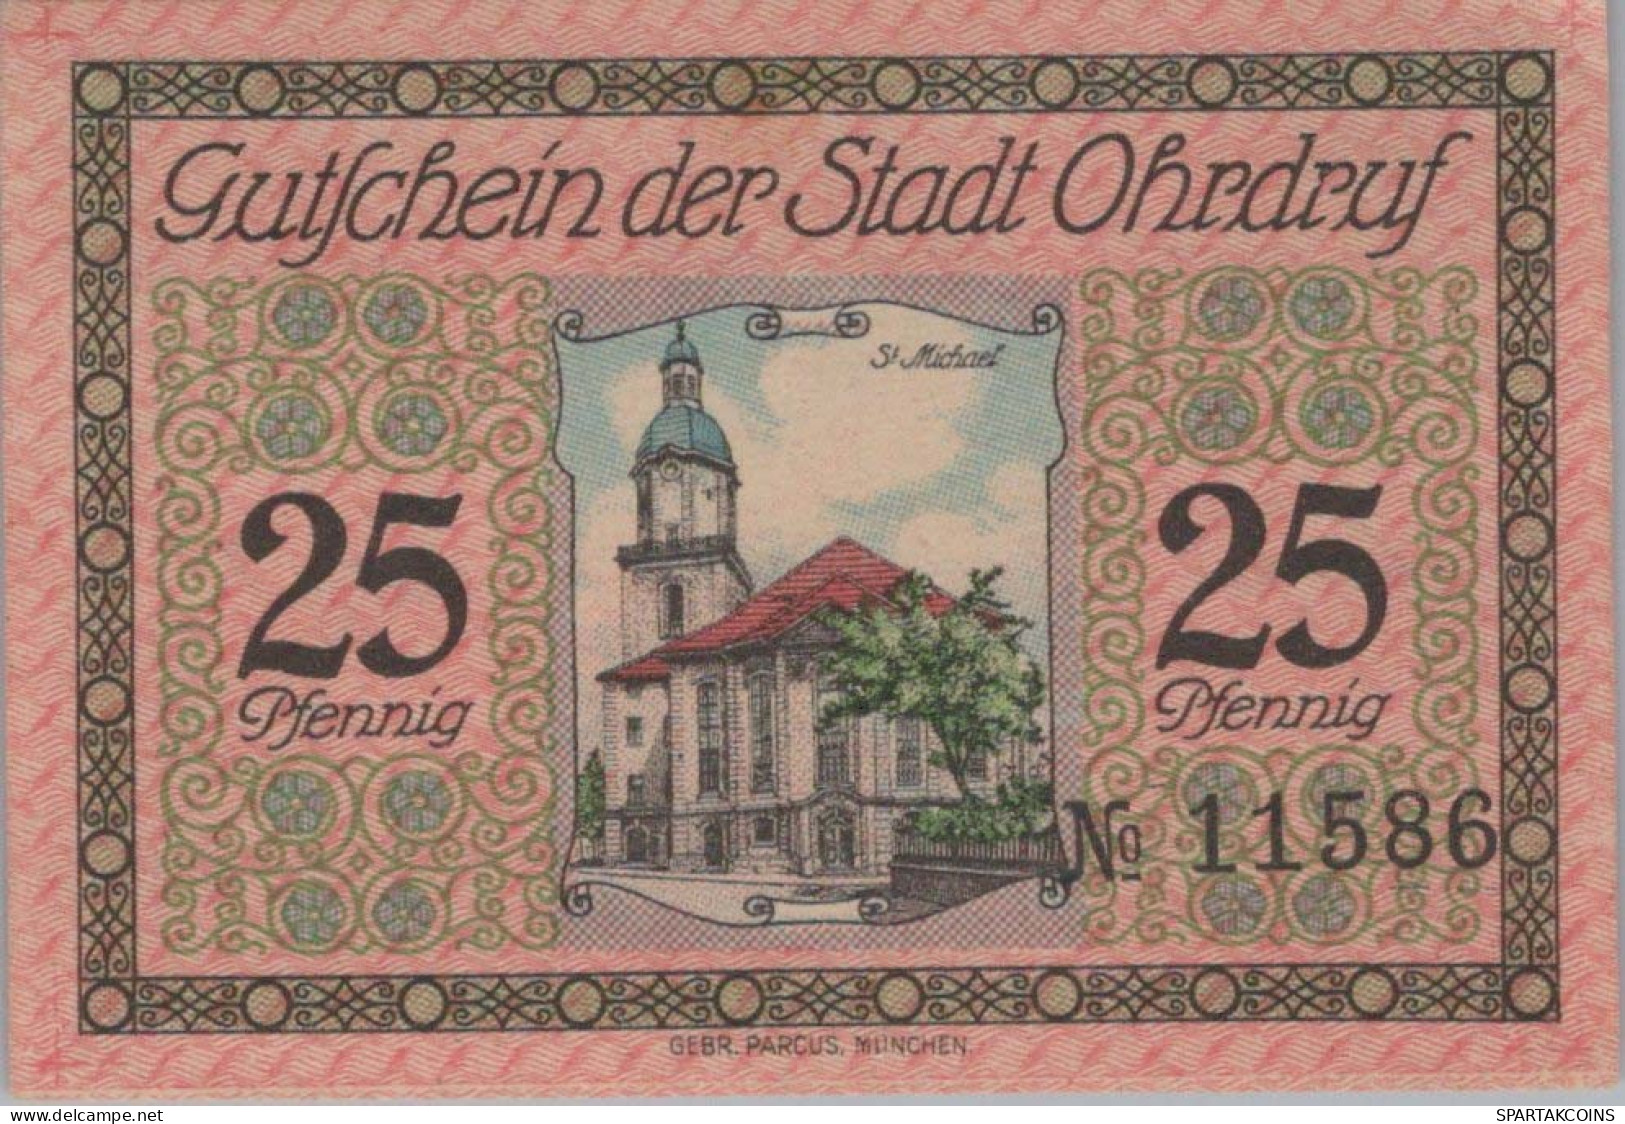 25 PFENNIG 1921 Stadt OHRDRUF Saxe-Coburg And Gotha UNC DEUTSCHLAND #PJ075 - [11] Local Banknote Issues